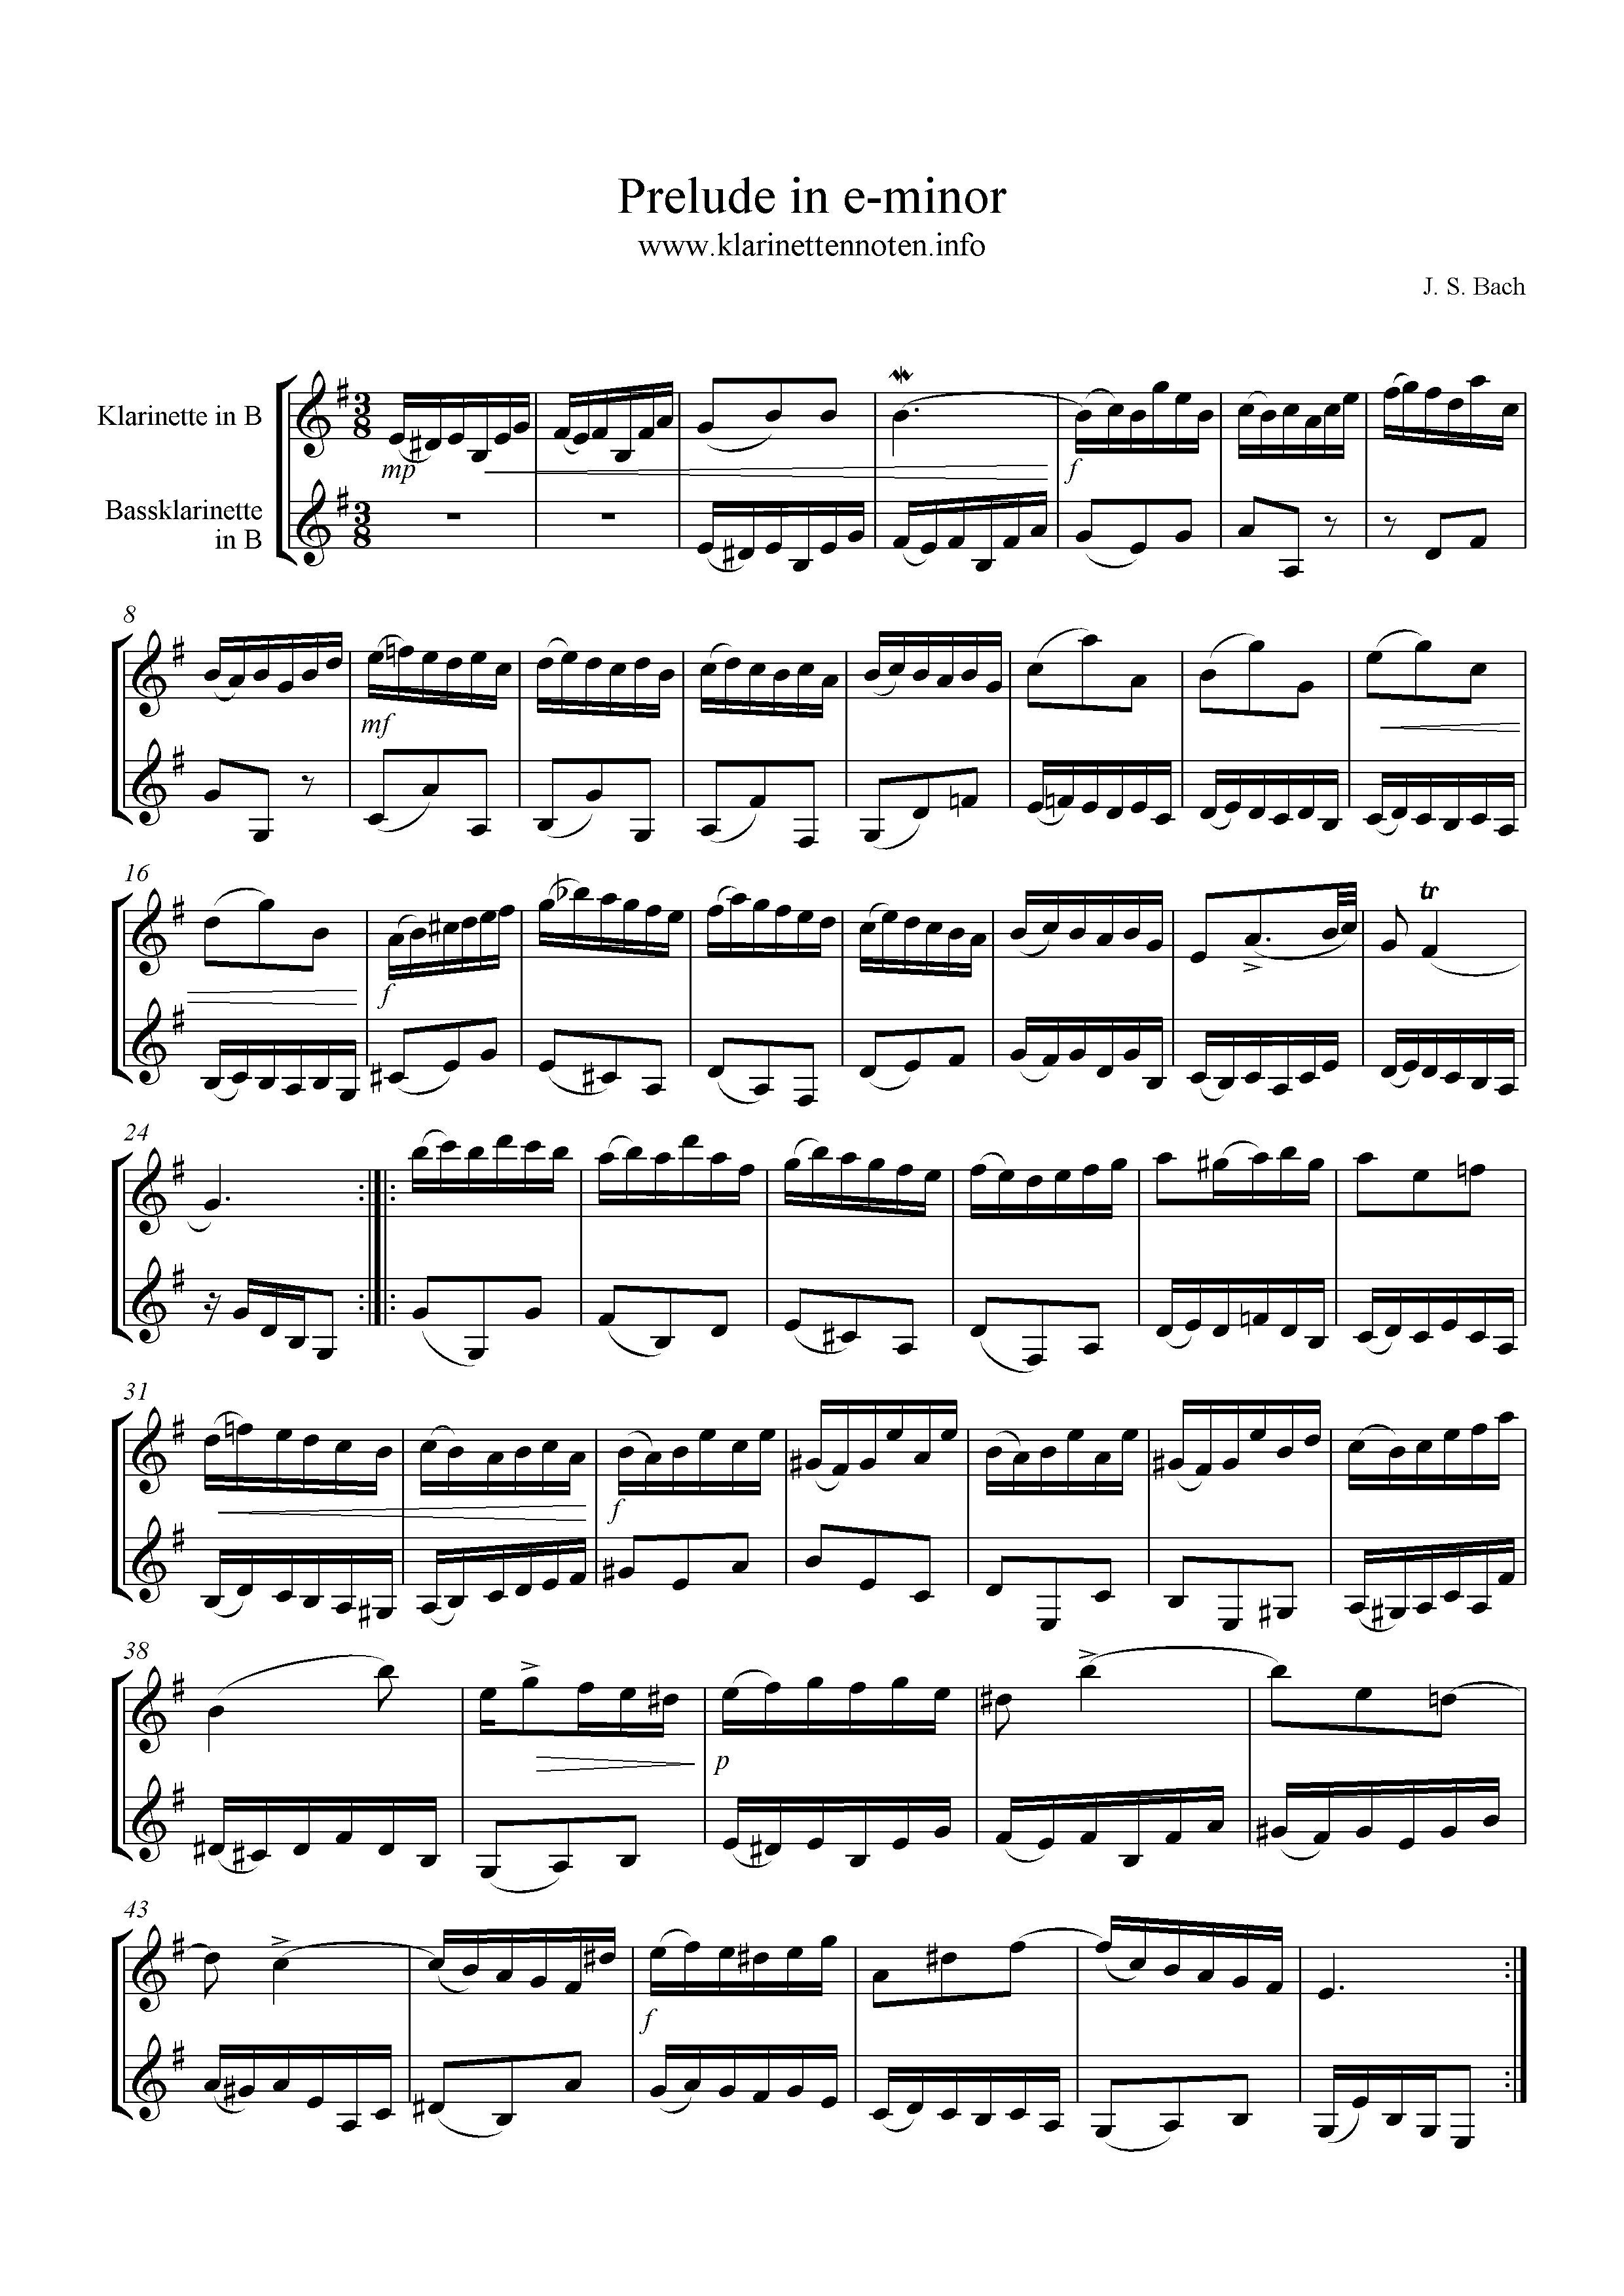 Prelude in e-minor, Bach, duo